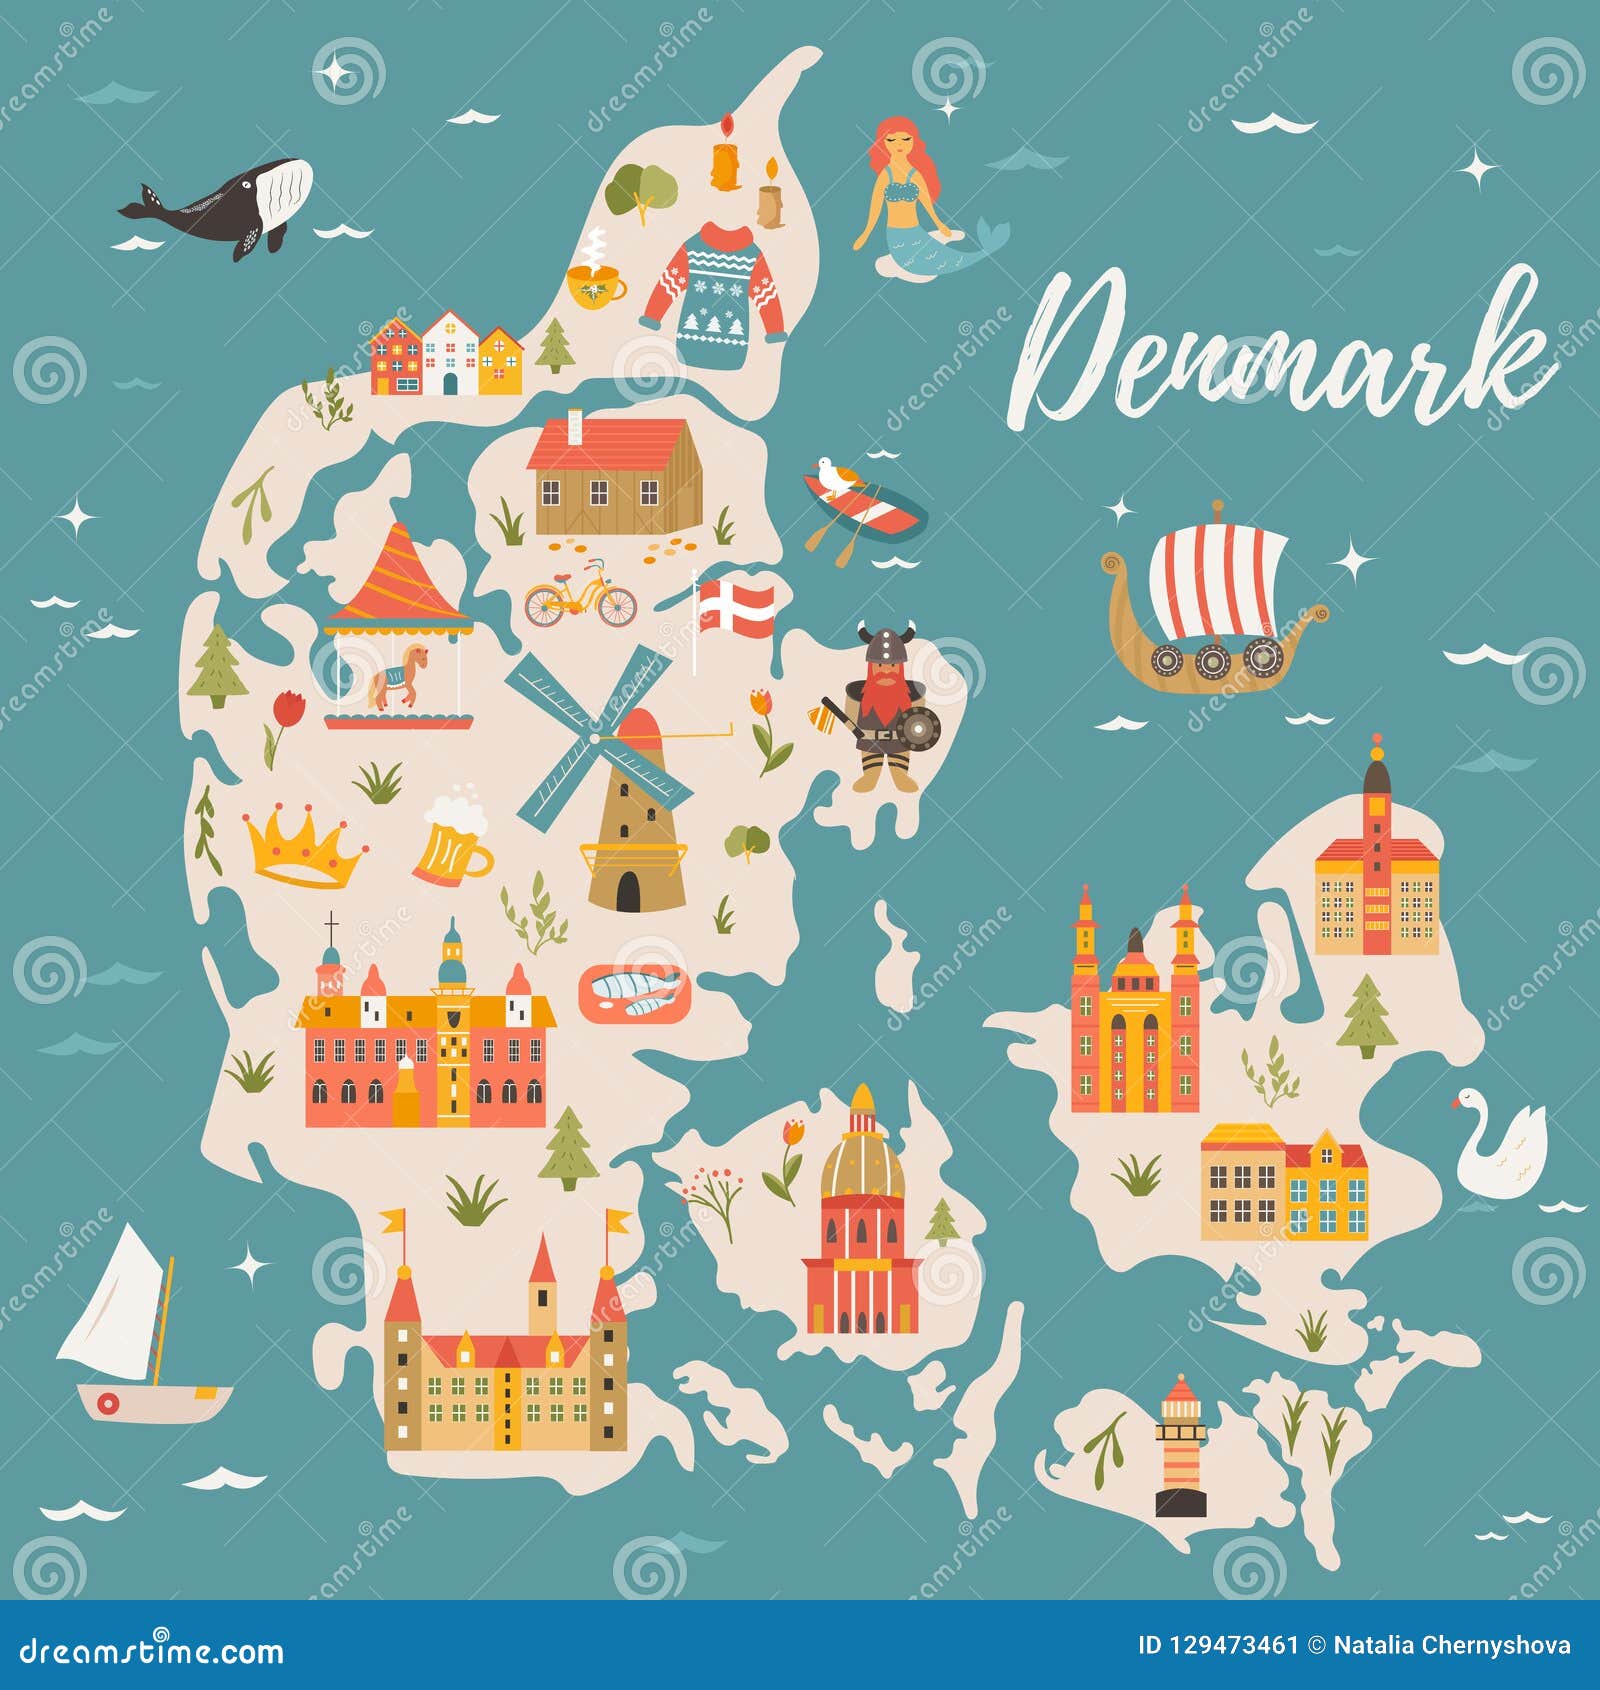 Карте пенья. Символы Дании. Датское королевство иллюстрации.